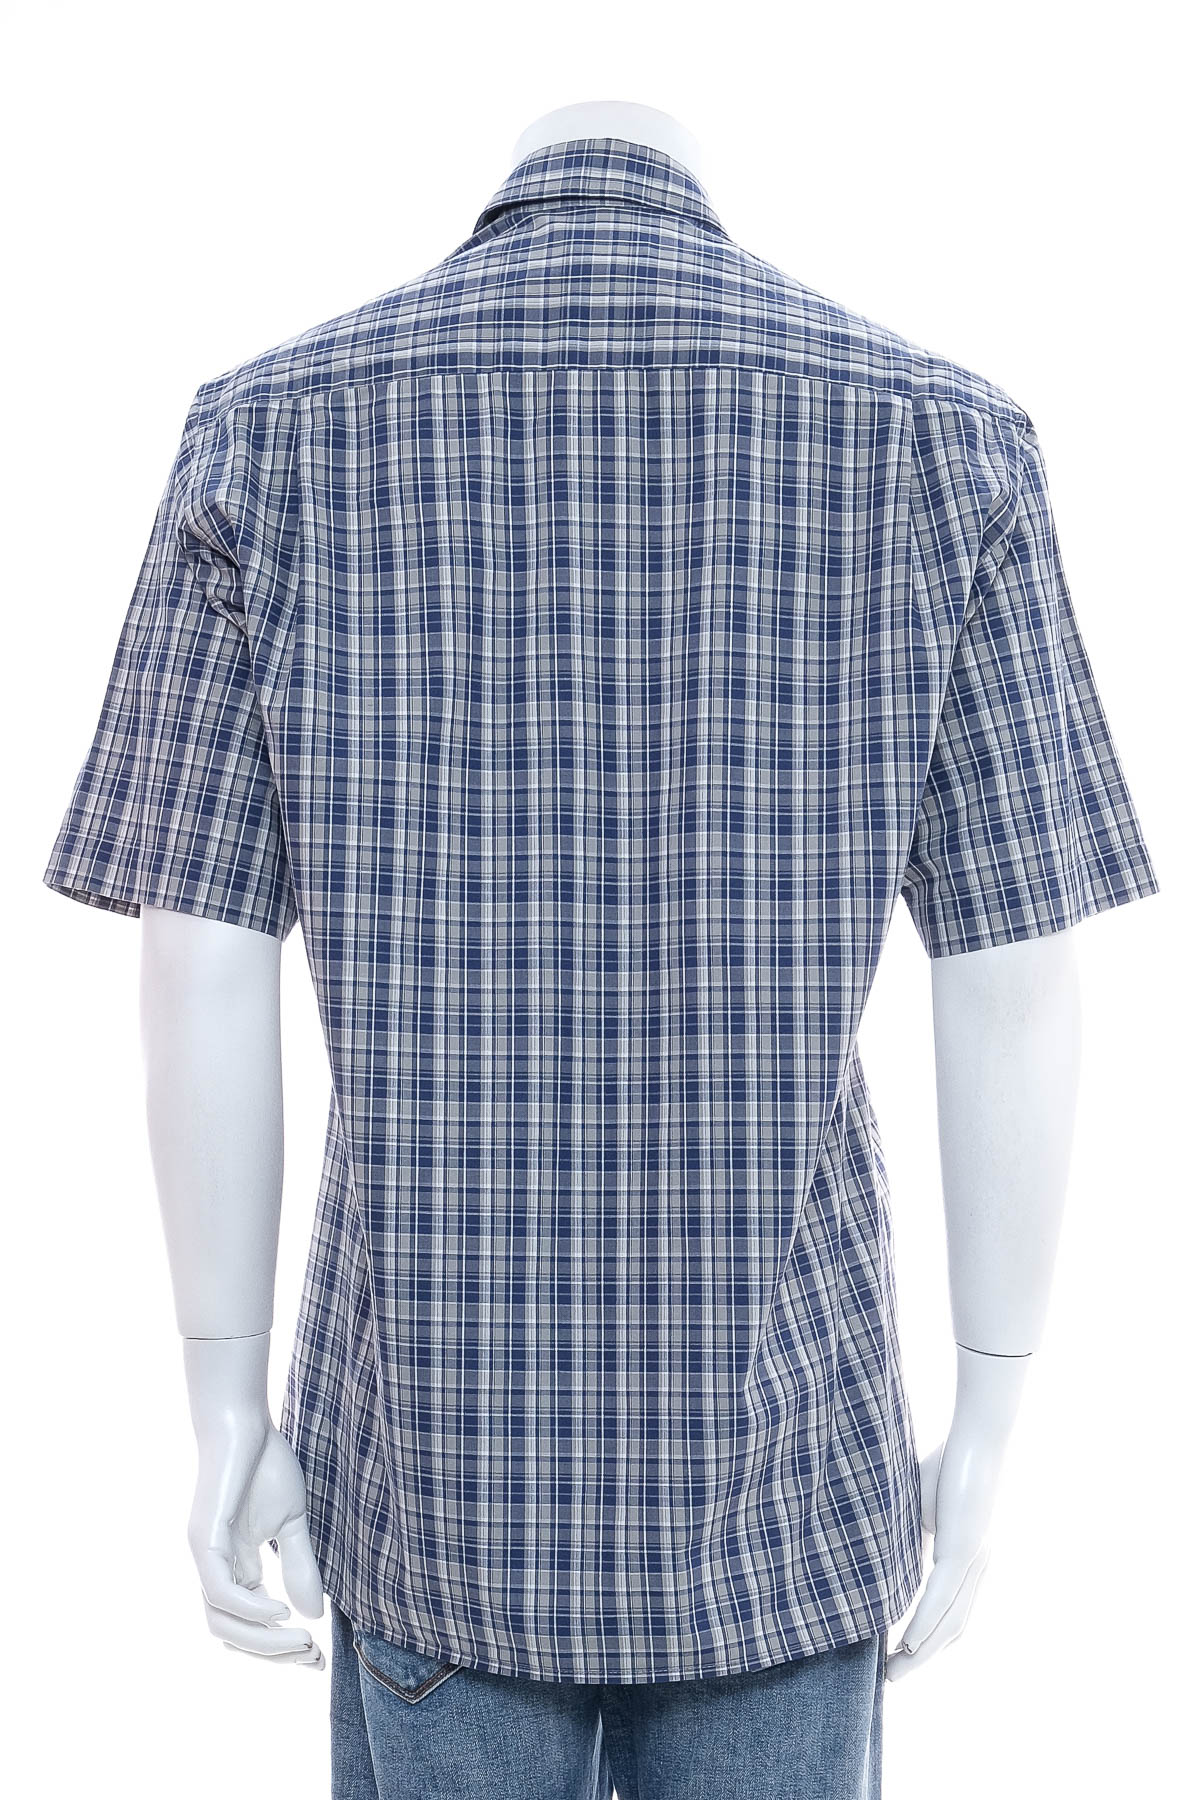 Ανδρικό πουκάμισο - Sk l'uomoda - 1